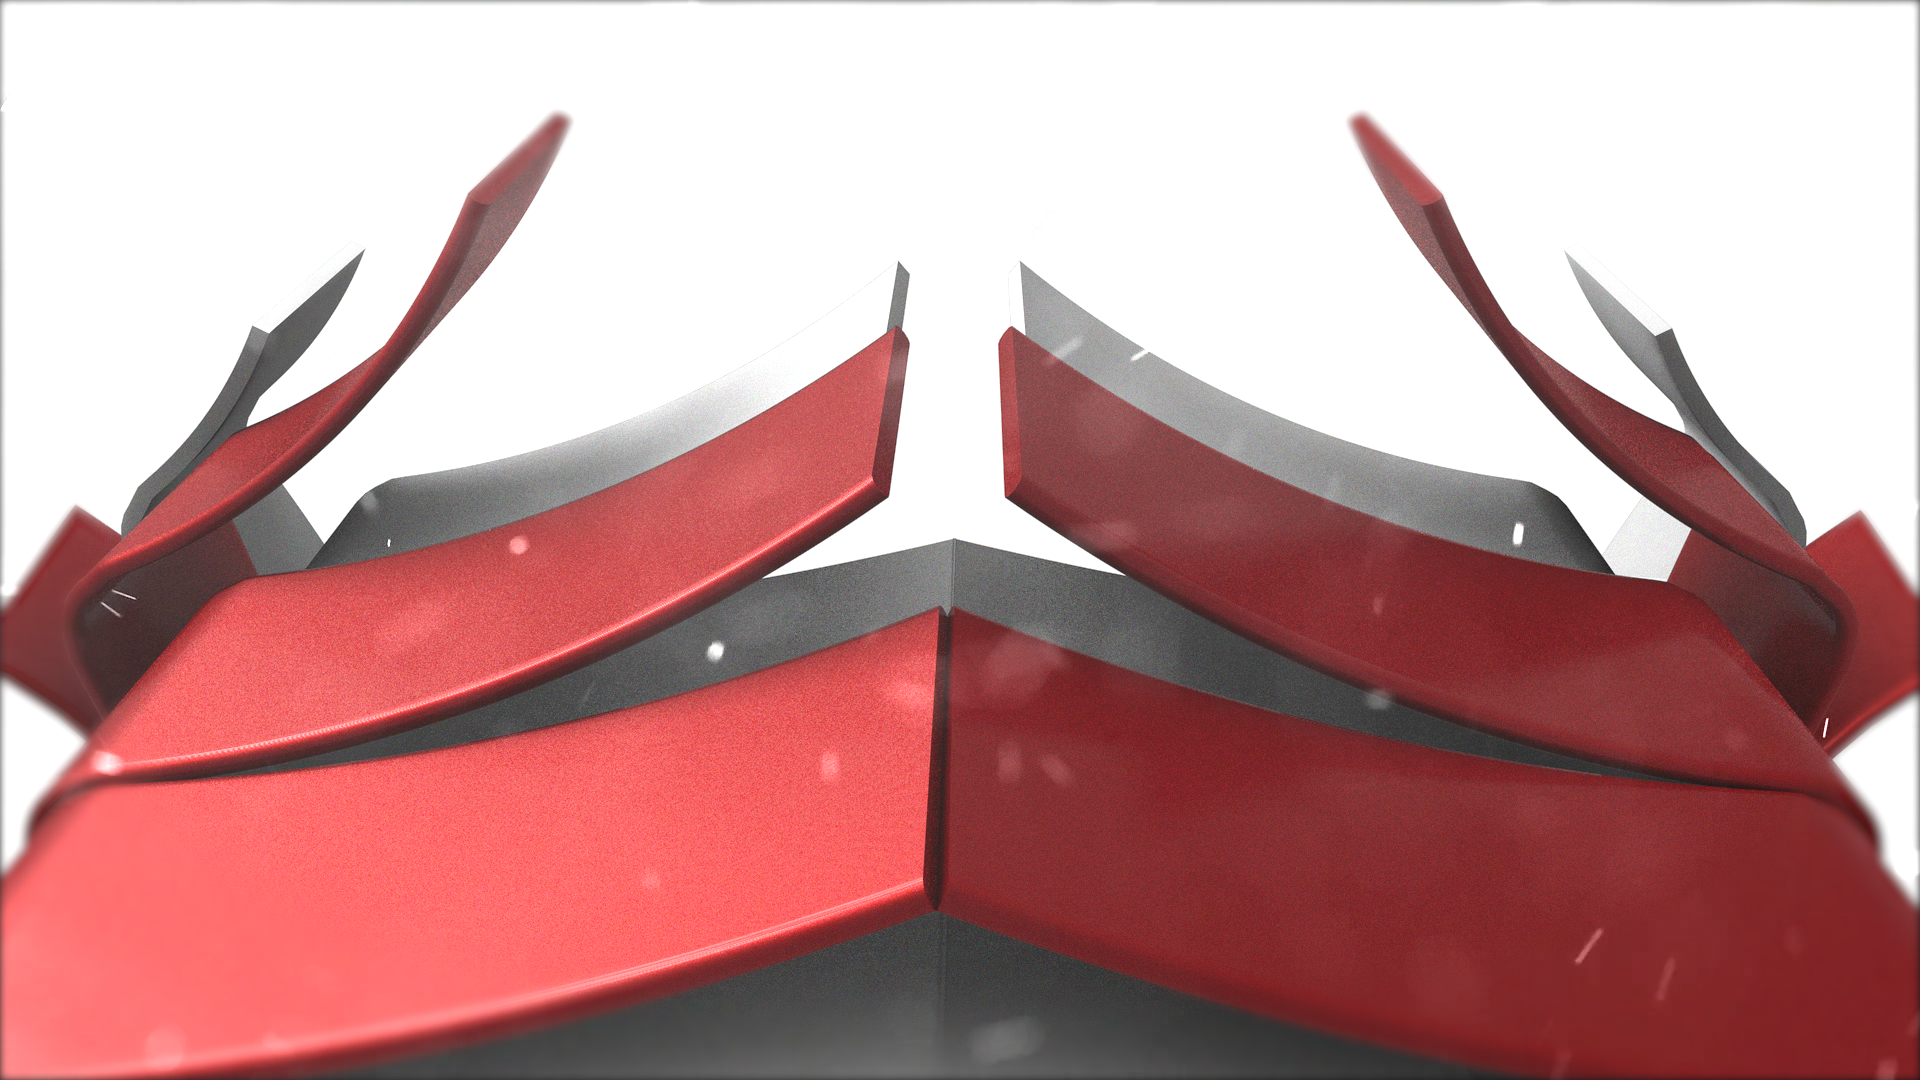 Styleframe do Dasio Maia para a Voxel Digital (Vinheta 3D).